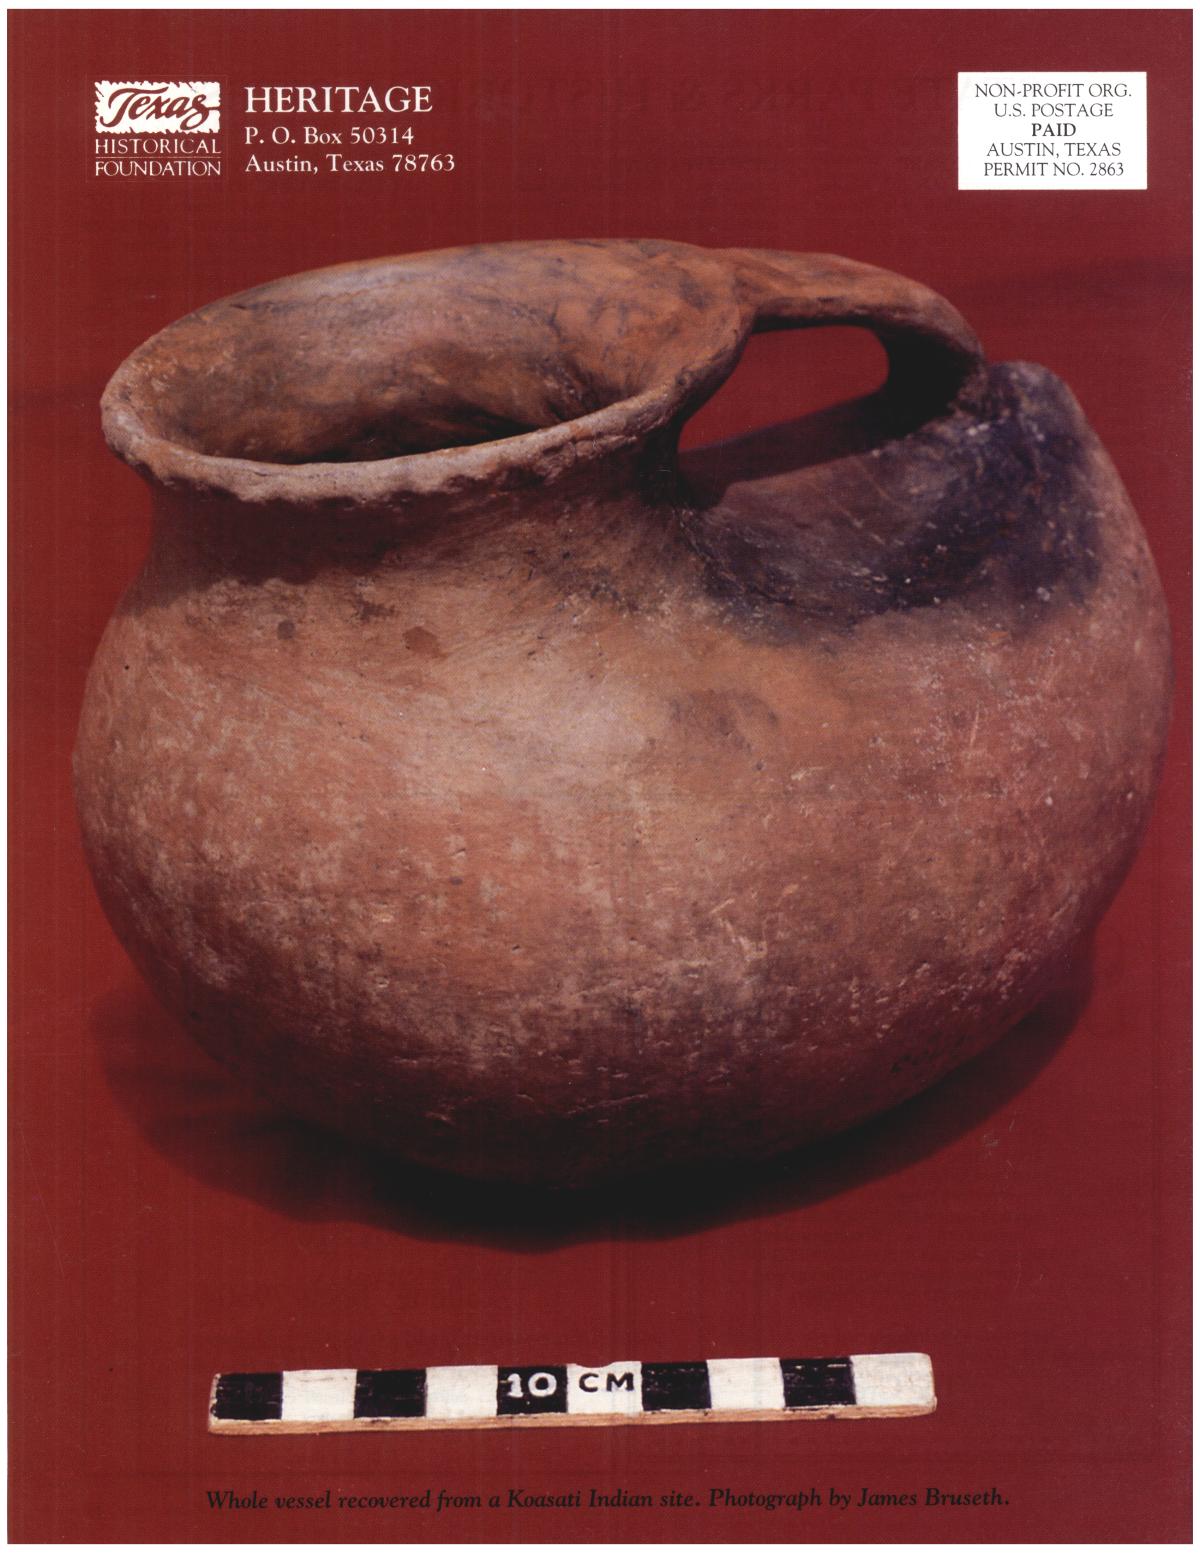 Heritage, Volume 10, Number 2, Spring 1992
                                                
                                                    Back Cover
                                                